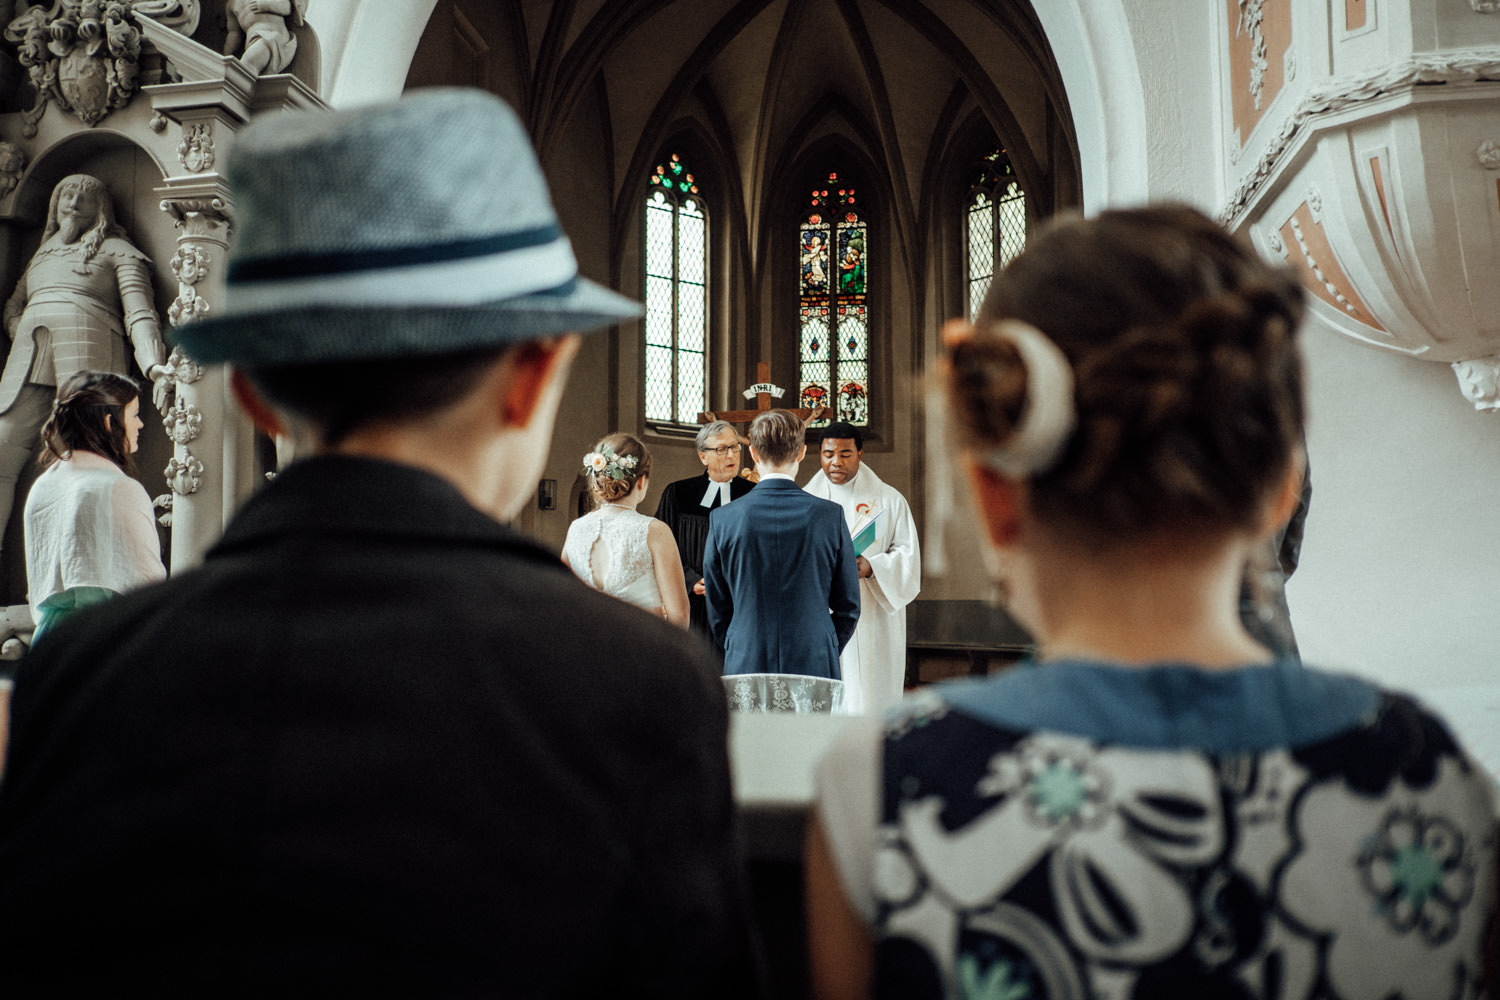 Zelthochzeit-Inspiration-Hochzeitsreportage-natürlich-Hessenhof-Coburg-Oberfranken-Aachen-Hochzeitsfotograf-Kevin Biberbach-KEVIN Fotografie-Junebug-Hochzeitswahn-060.jpg